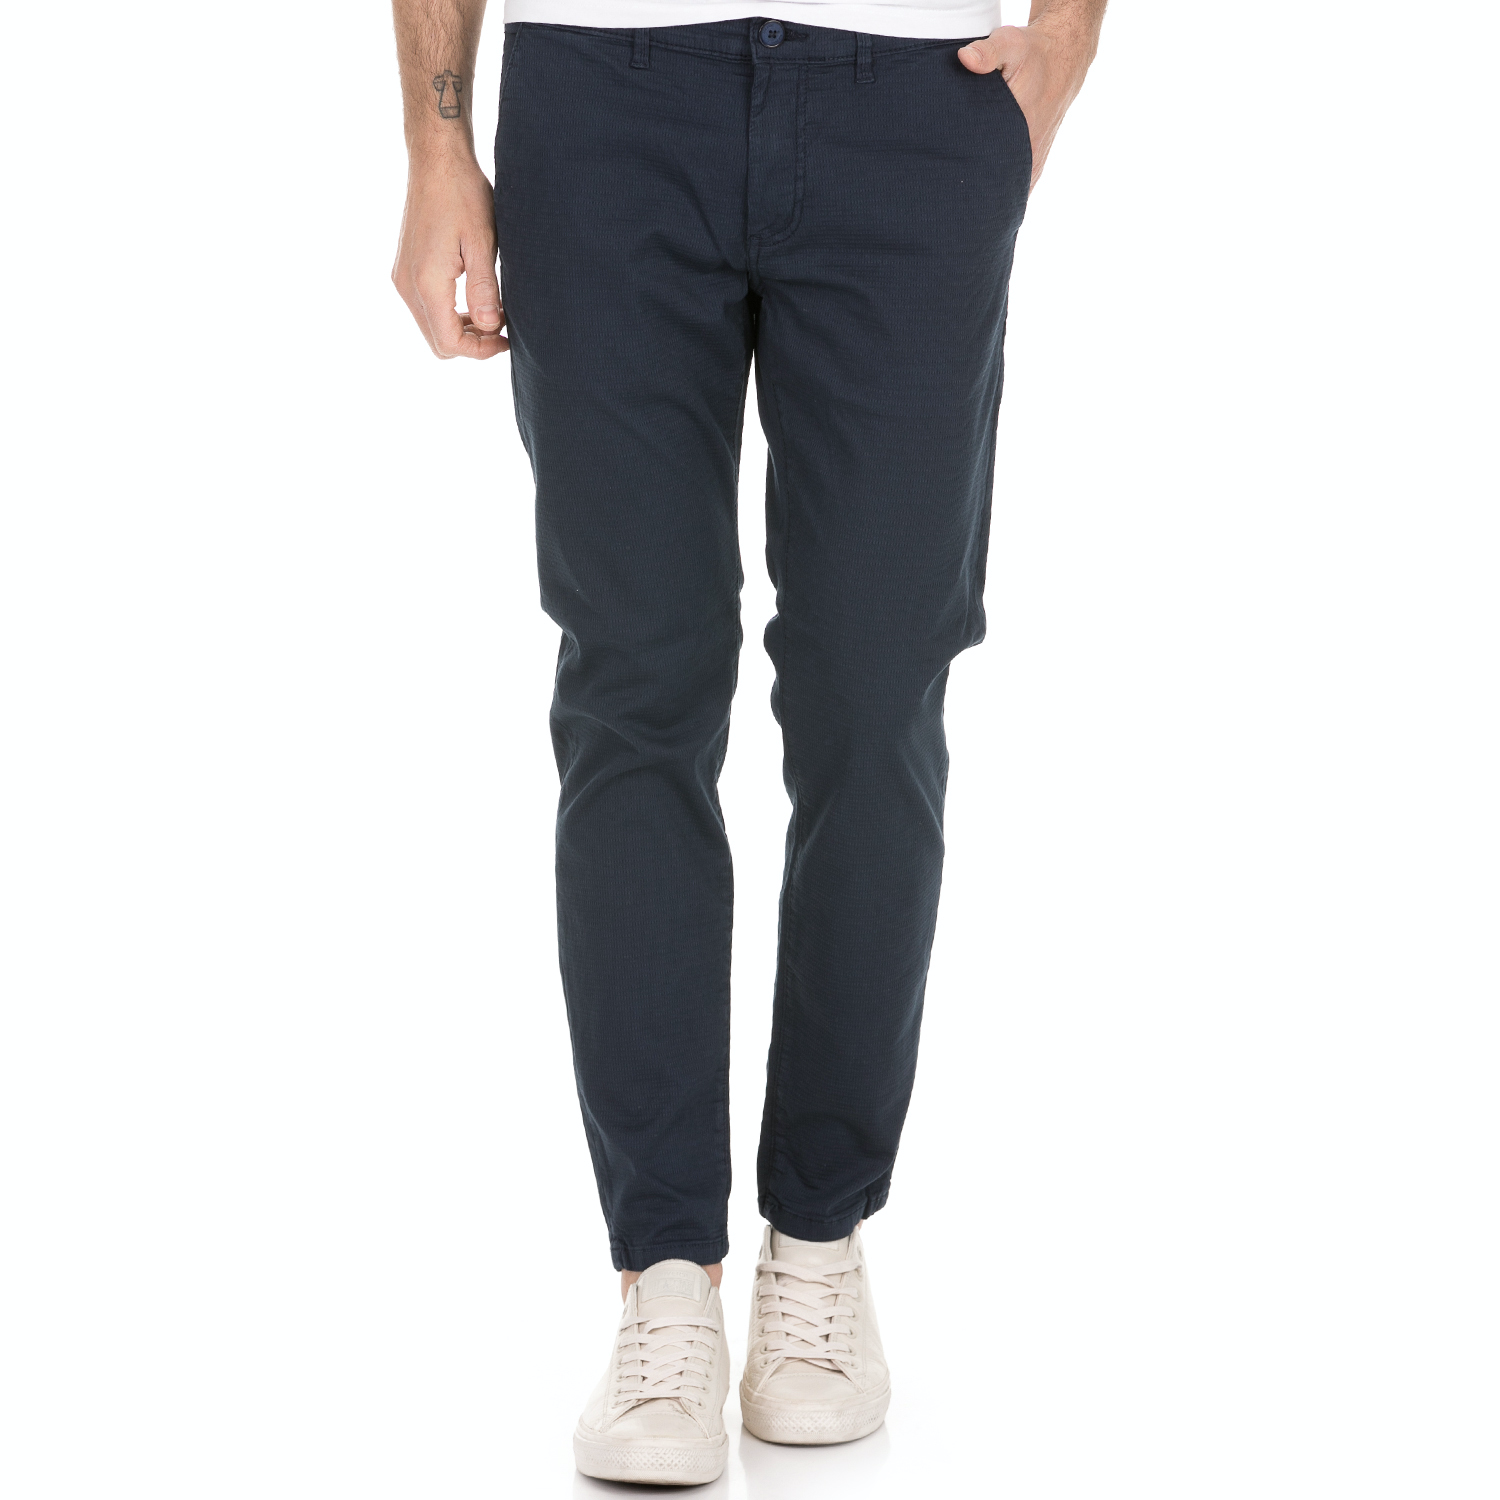 Ανδρικά/Ρούχα/Παντελόνια/Chinos SSEINSE - Ανδρικό παντελόνι AMERICA SSEINSE μπλε